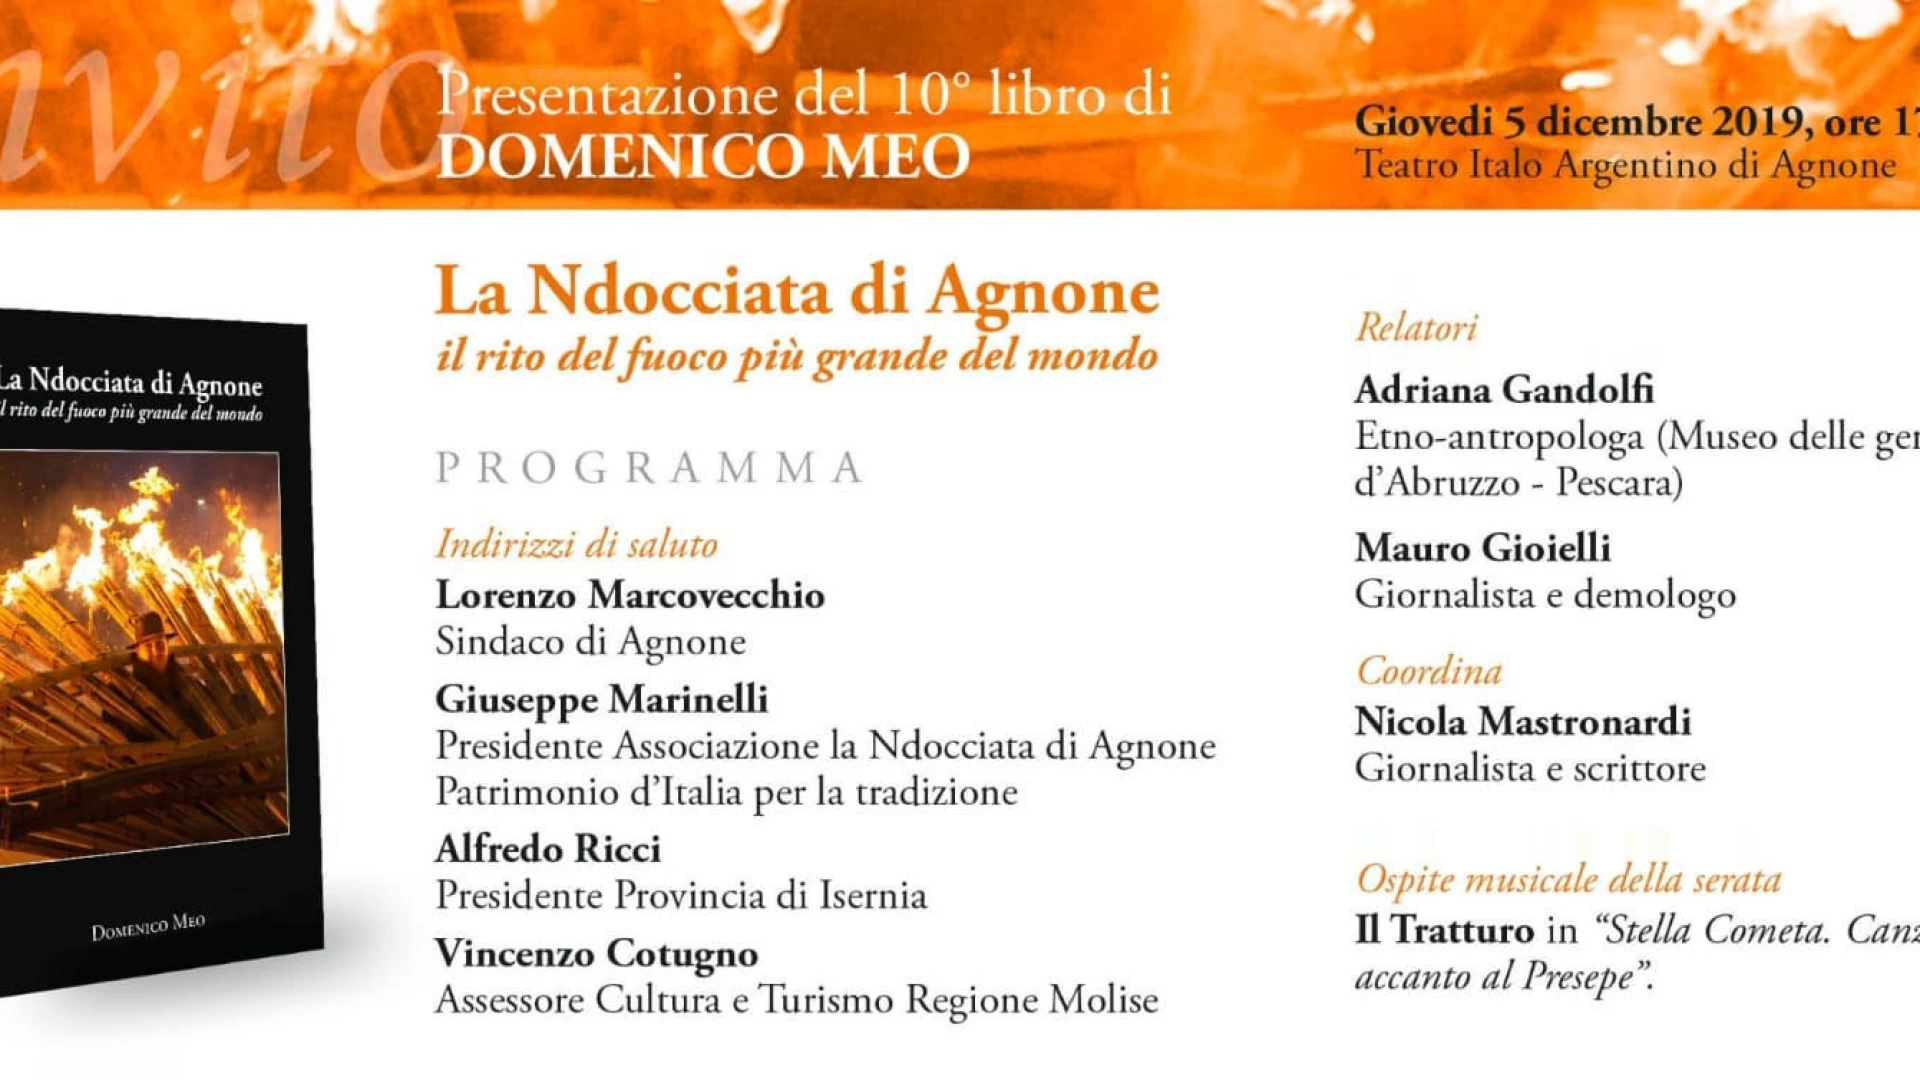 La Ndocciata di Agnone, giovedì 5 dicembre la presentazione del volume di Domenico Meo.